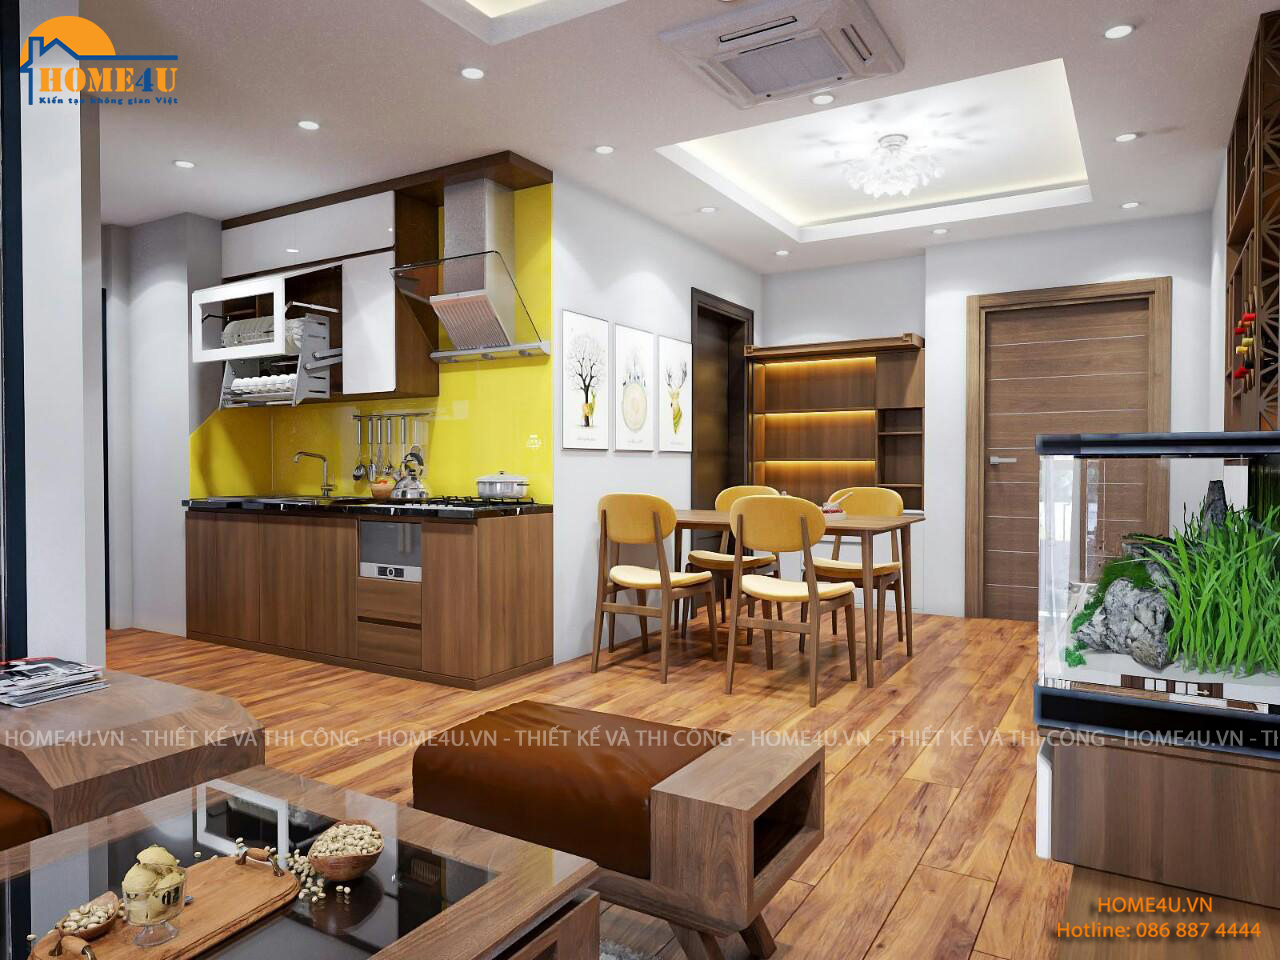 Hãy khám phá thiết kế nội thất tuyệt đẹp của dự án chung cư An Bình City. Với một không gian sống đầy đủ tiện nghi và sang trọng, An Bình City sẽ giúp bạn tận hưởng cuộc sống đúng nghĩa.